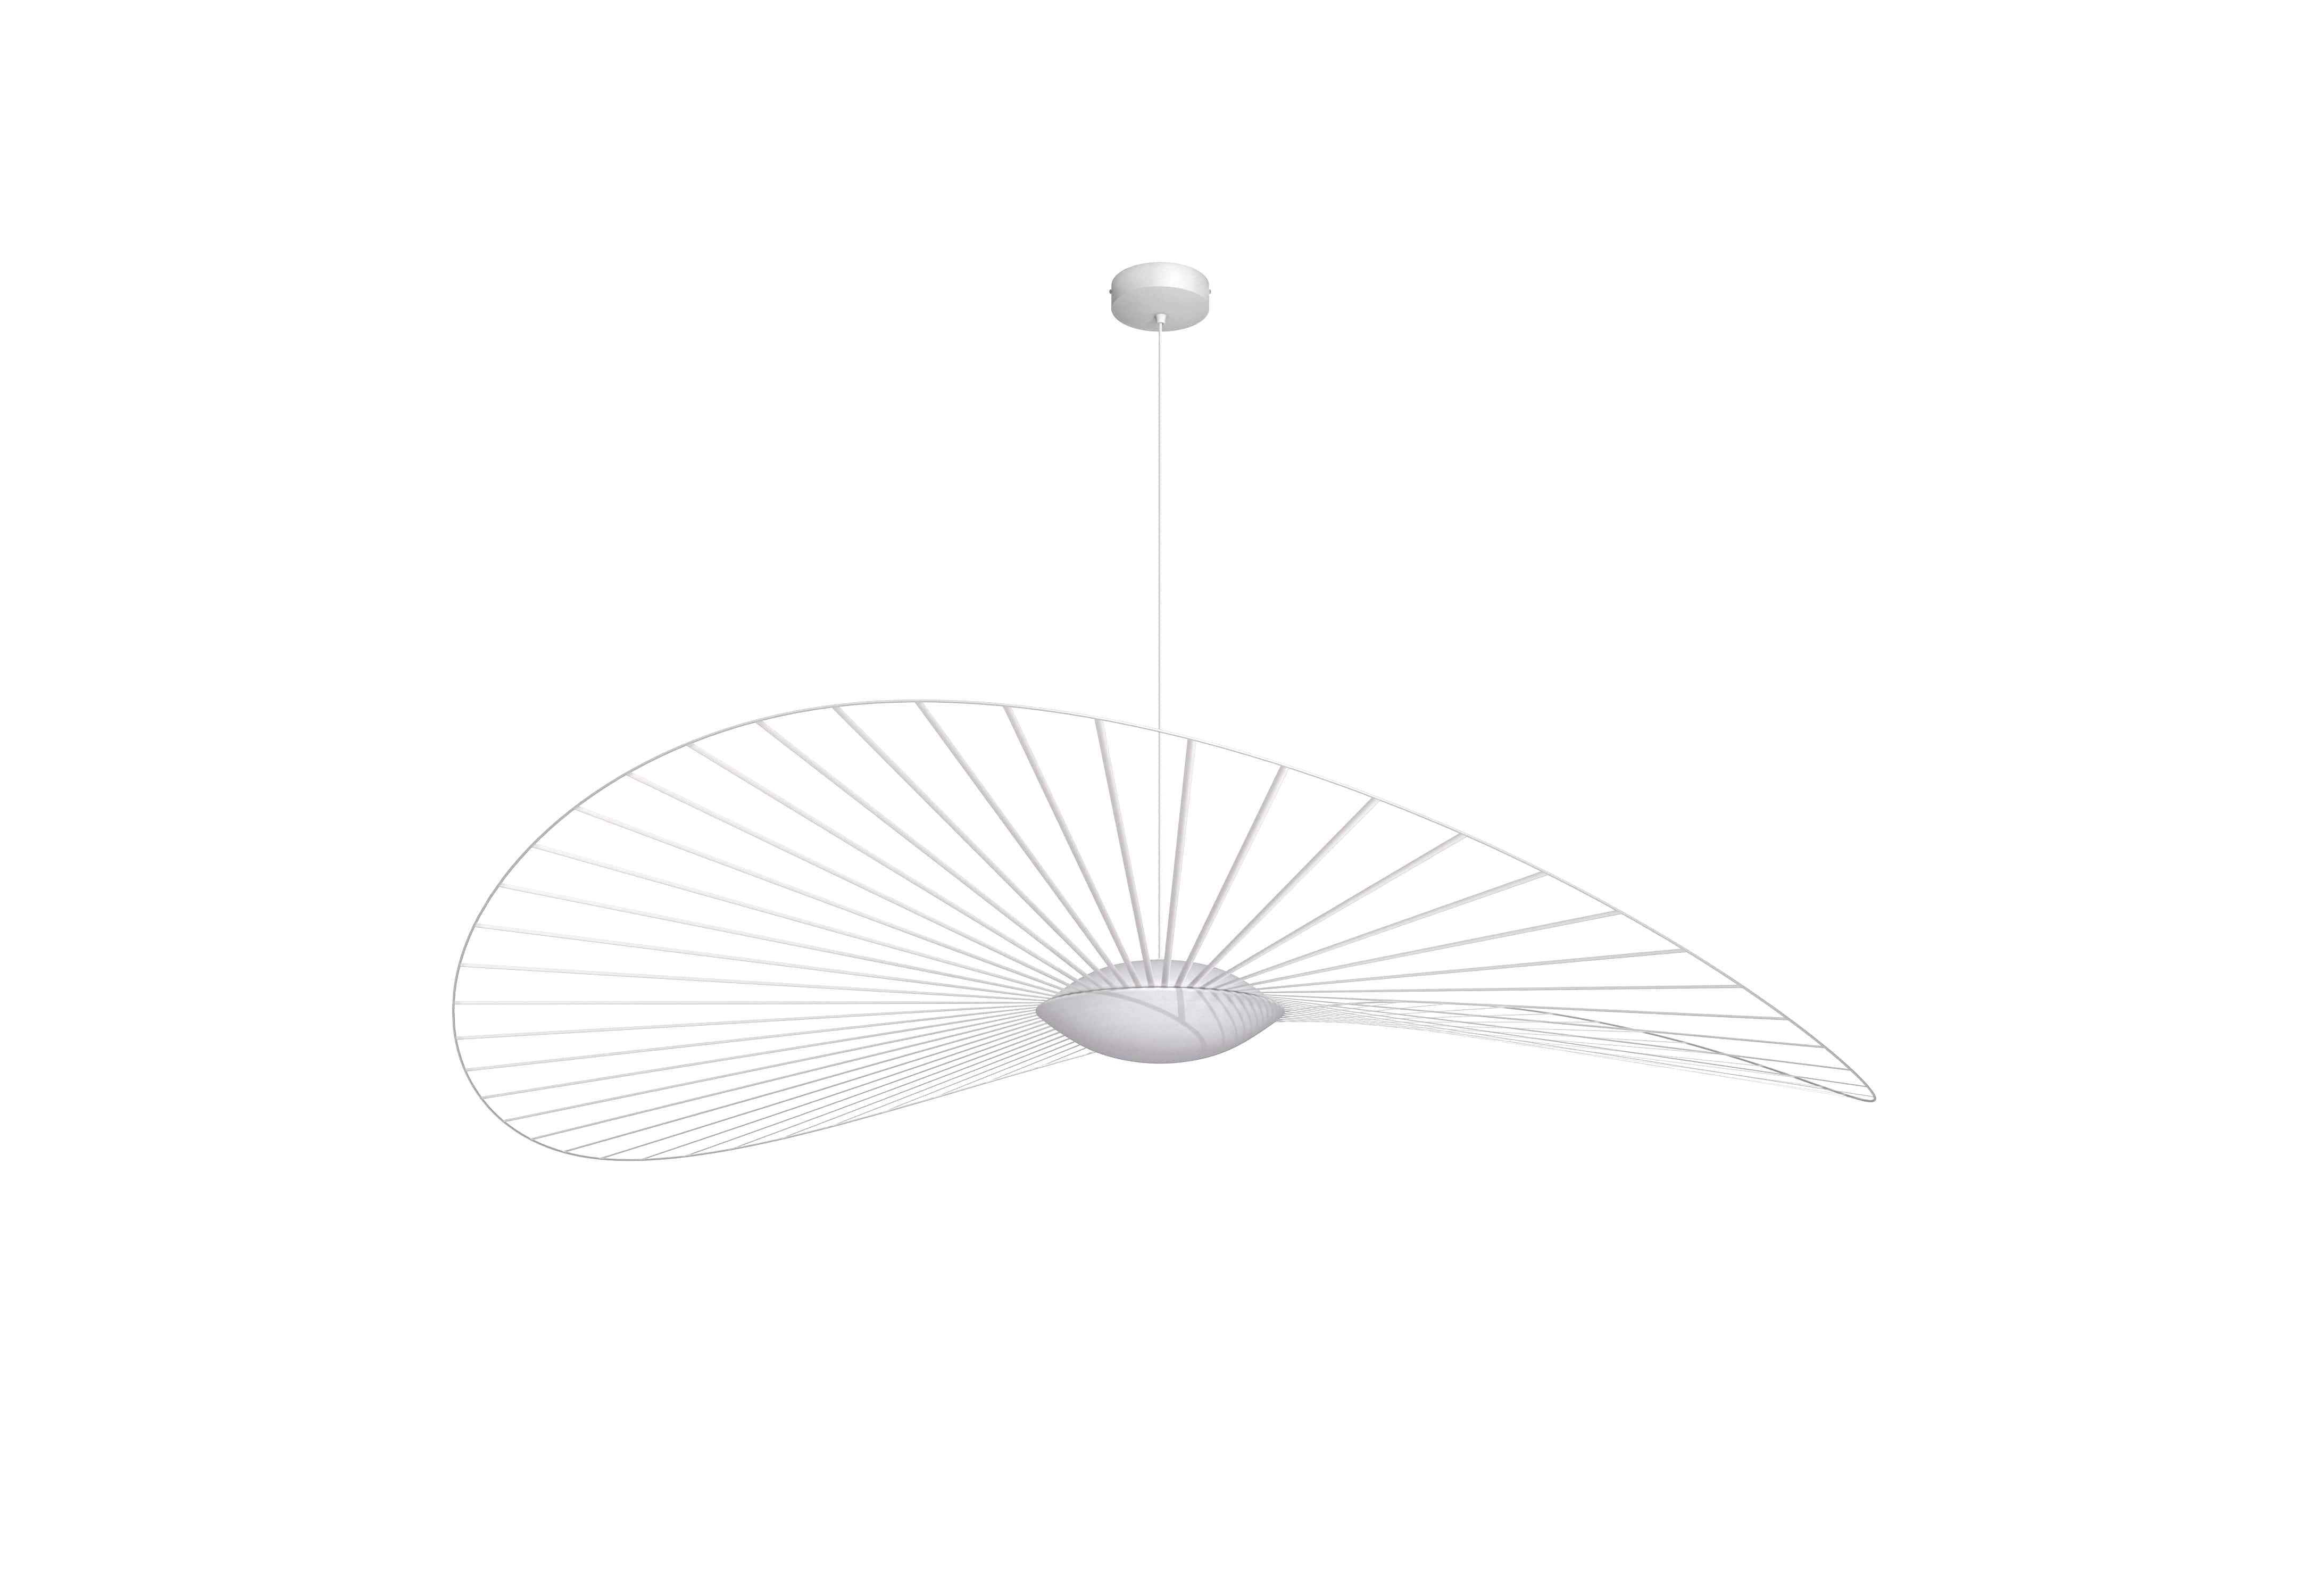 Petite Friture Large Vertigo Nova Suspension Light in White by Constance Guisset, 2020

Vertigo Nova est une collection hautement technique qui ne fait aucun compromis sur l'élégance poétique emblématique du Design/One. Une ligne qui se décline en